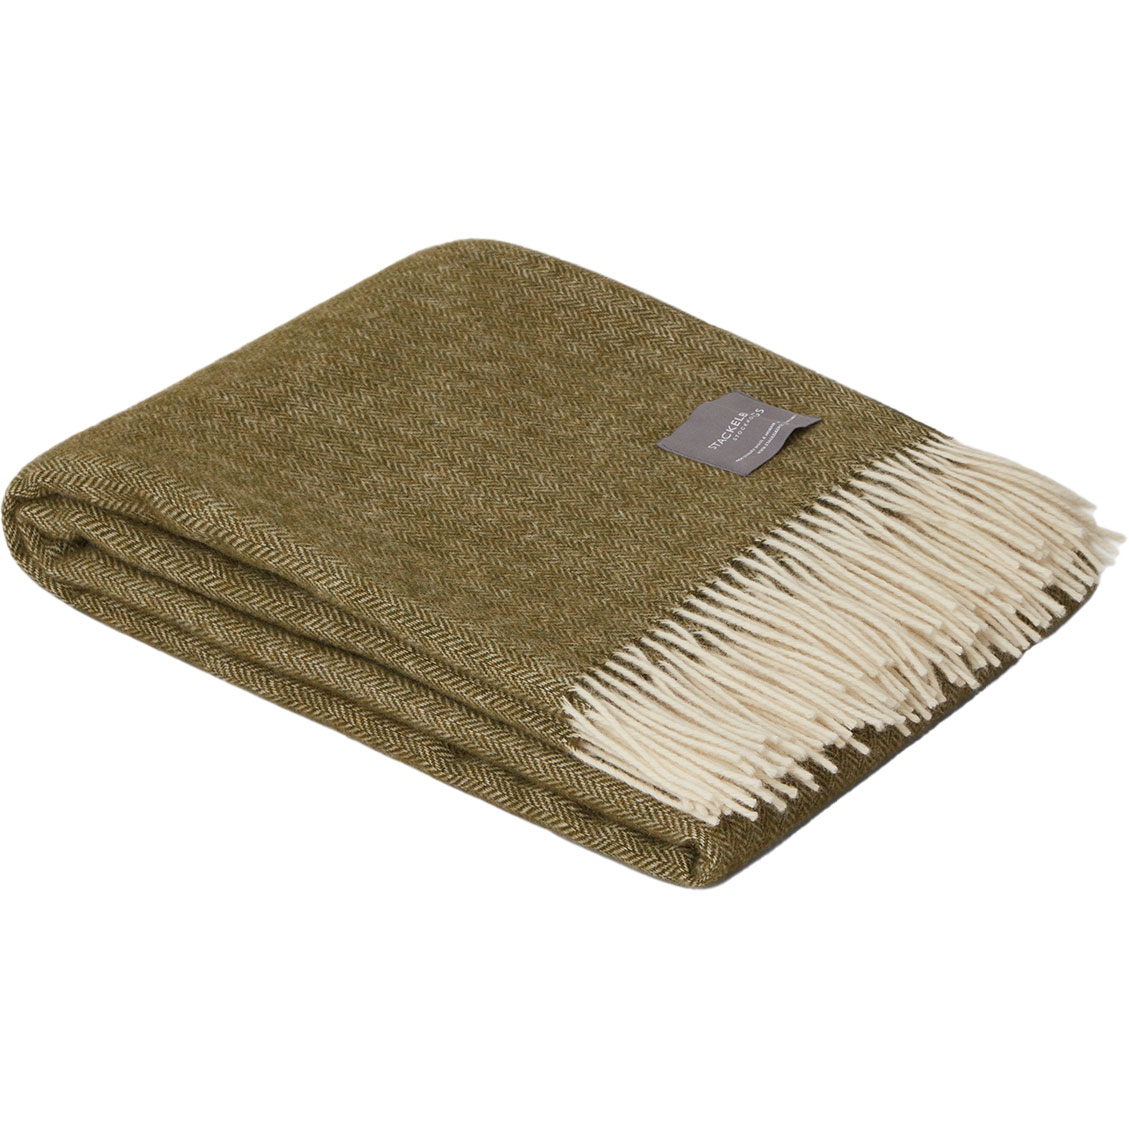 Wool Fishbone Blanket 130x170 cm, Olive/Off-white